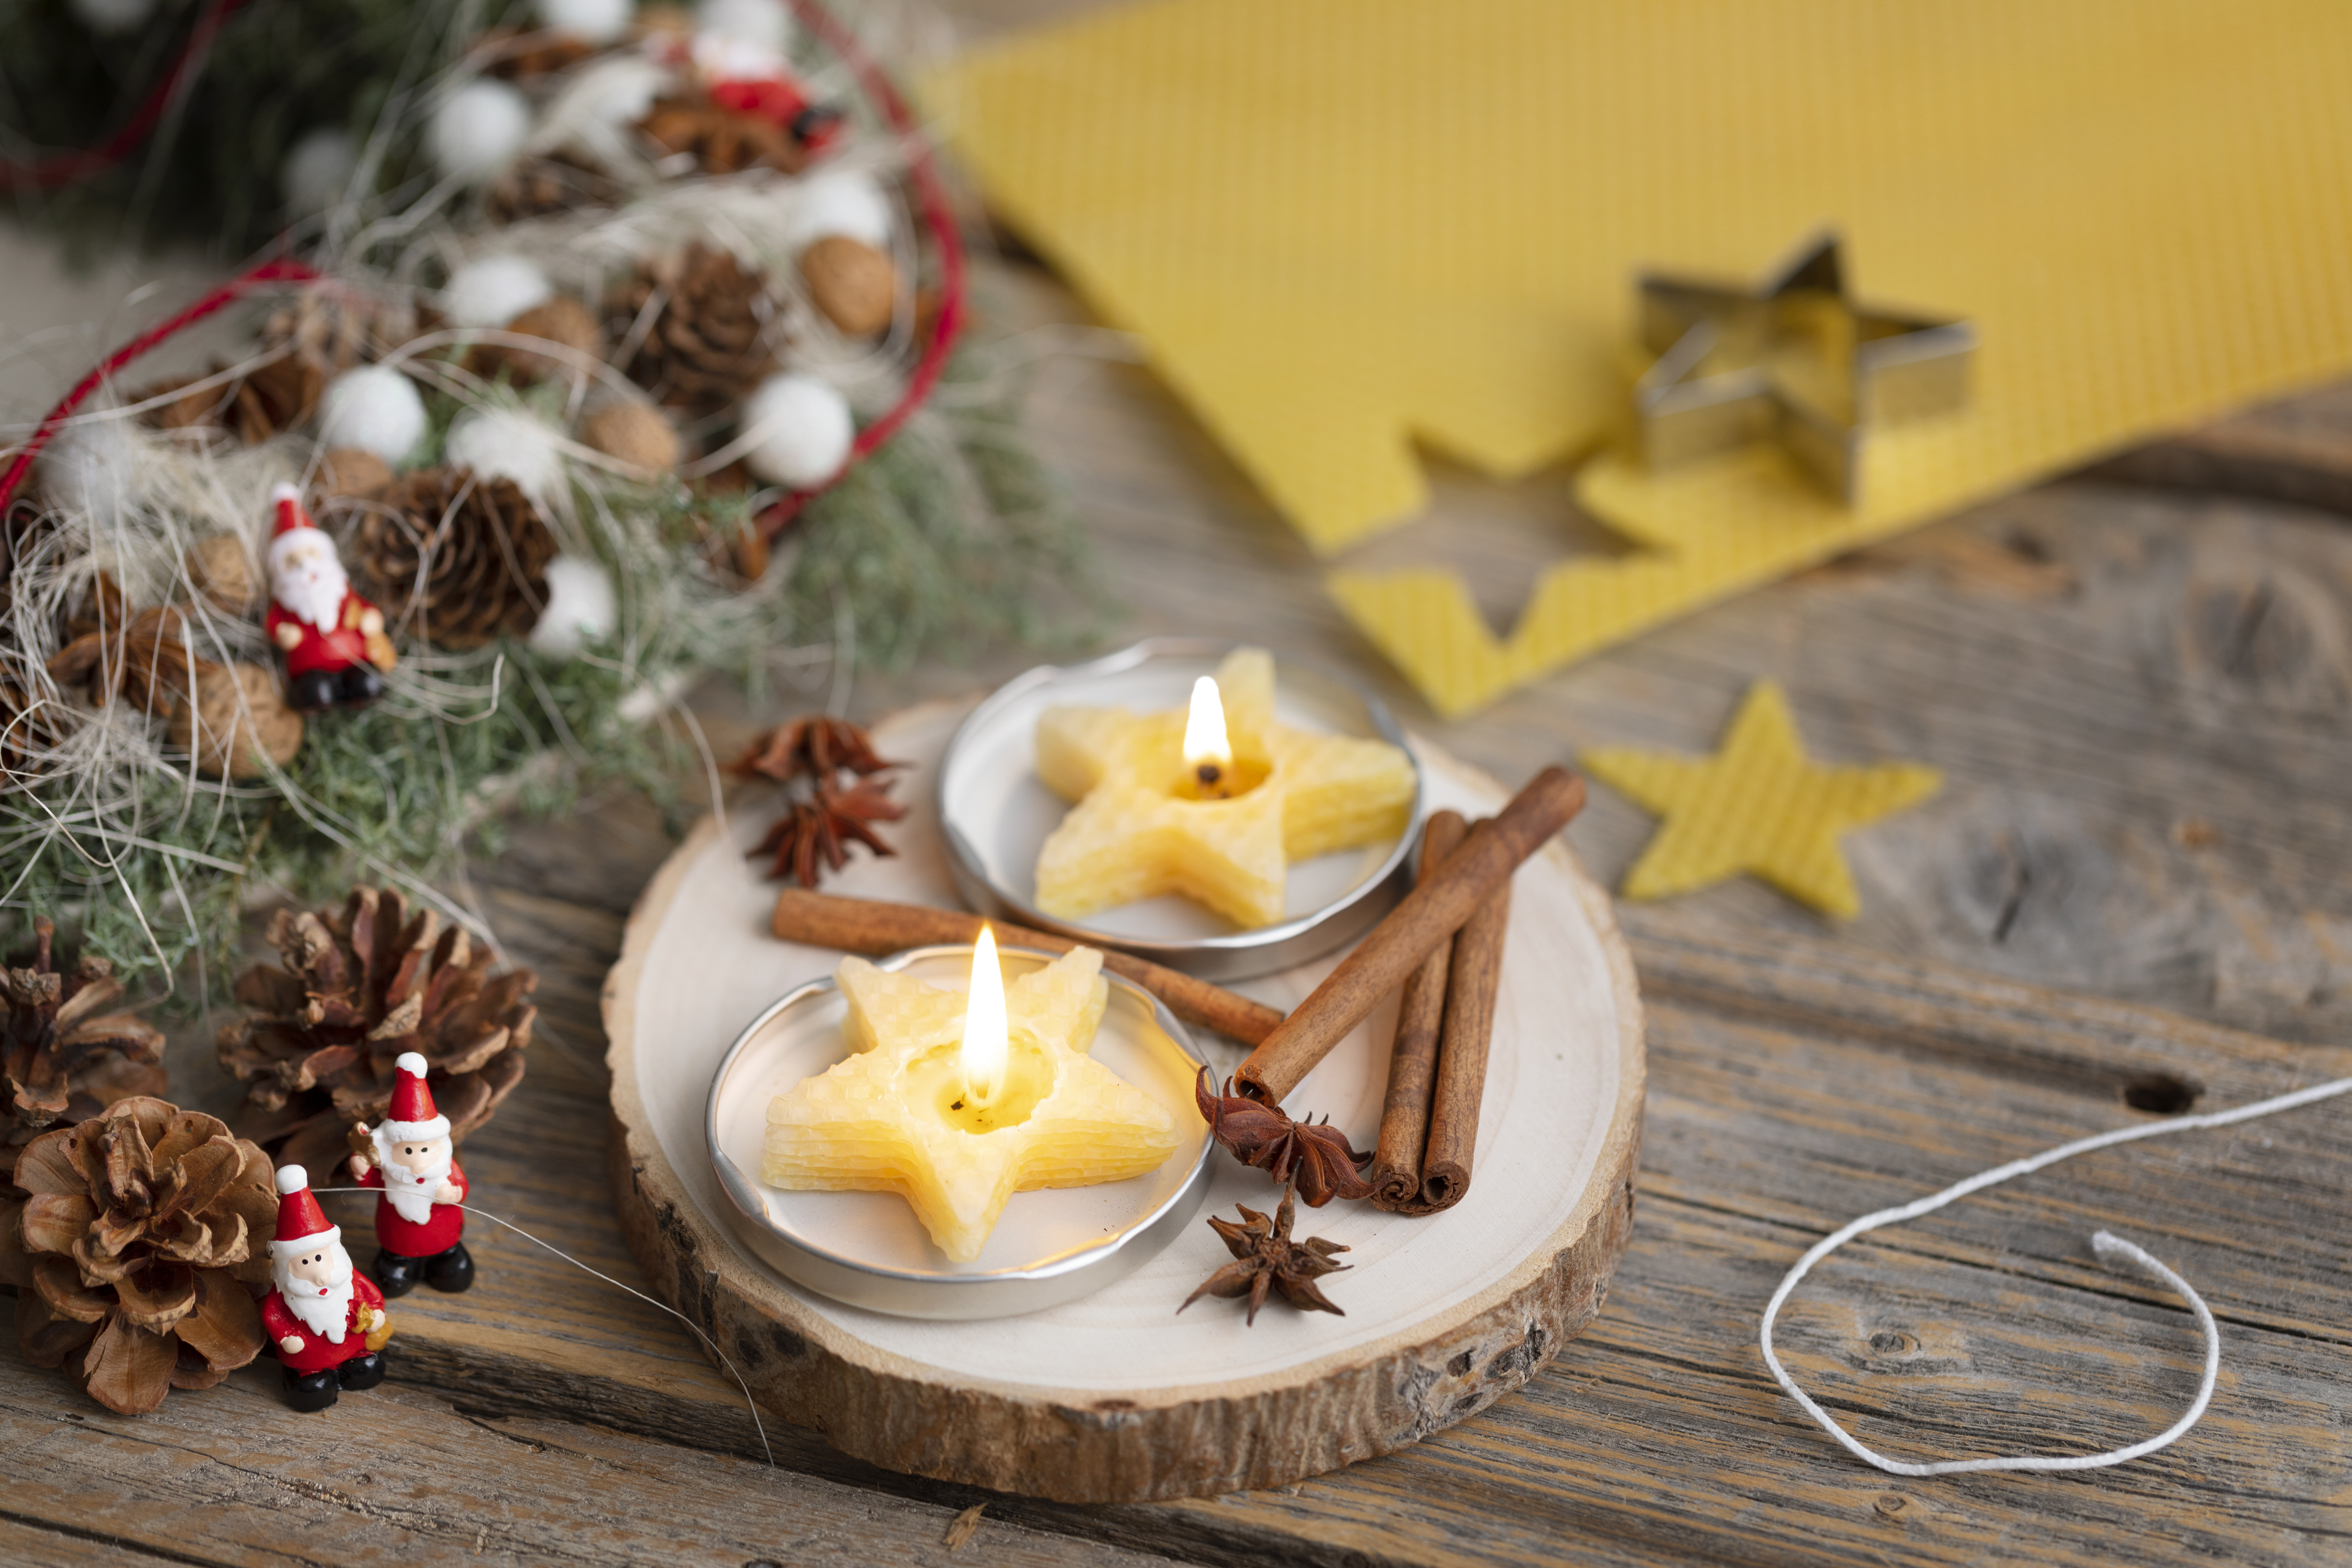 Kijkgat Geweldig Quagga 5 creatieve kerstdecoraties om zelf te maken - CChobby Blog